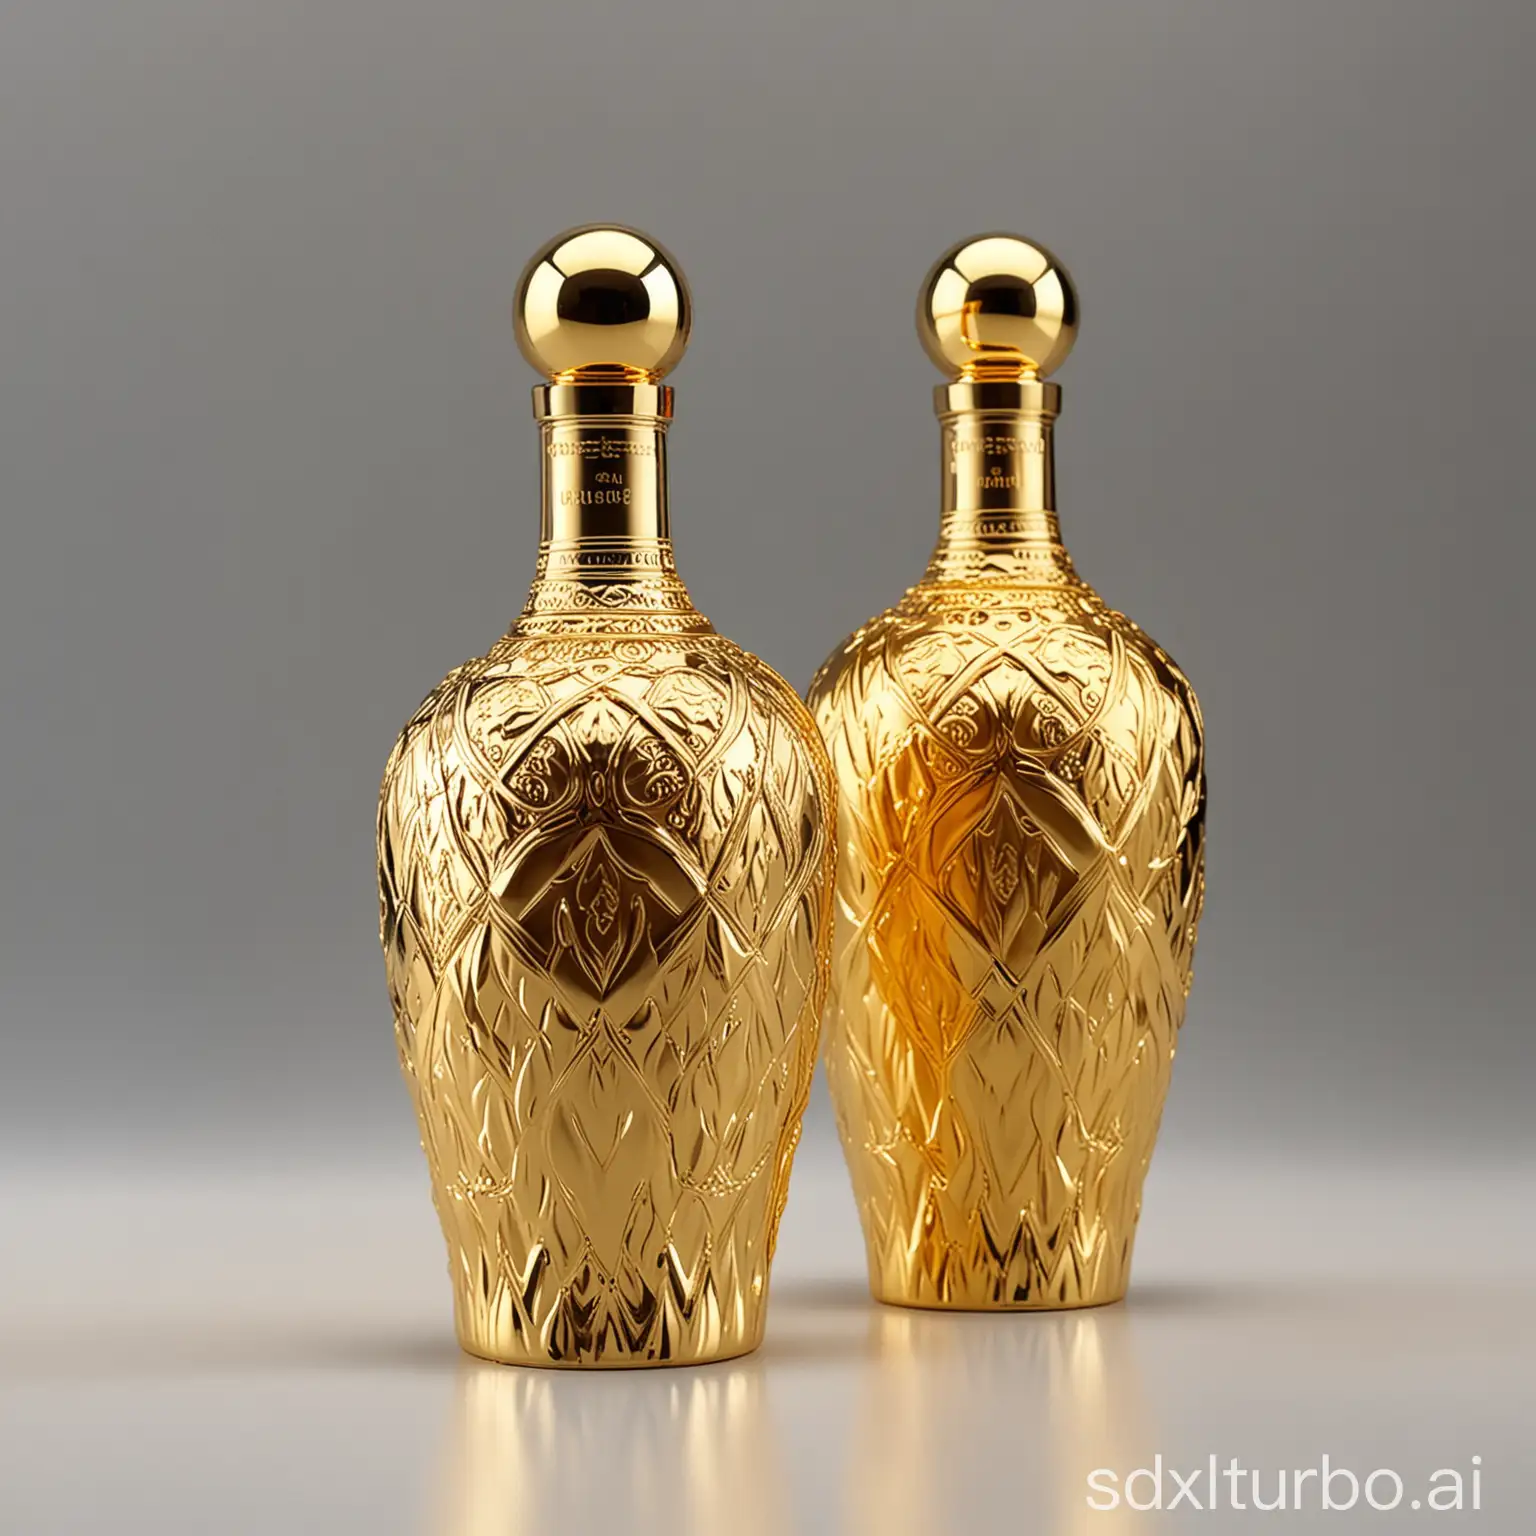 Golden luxurious style bottle